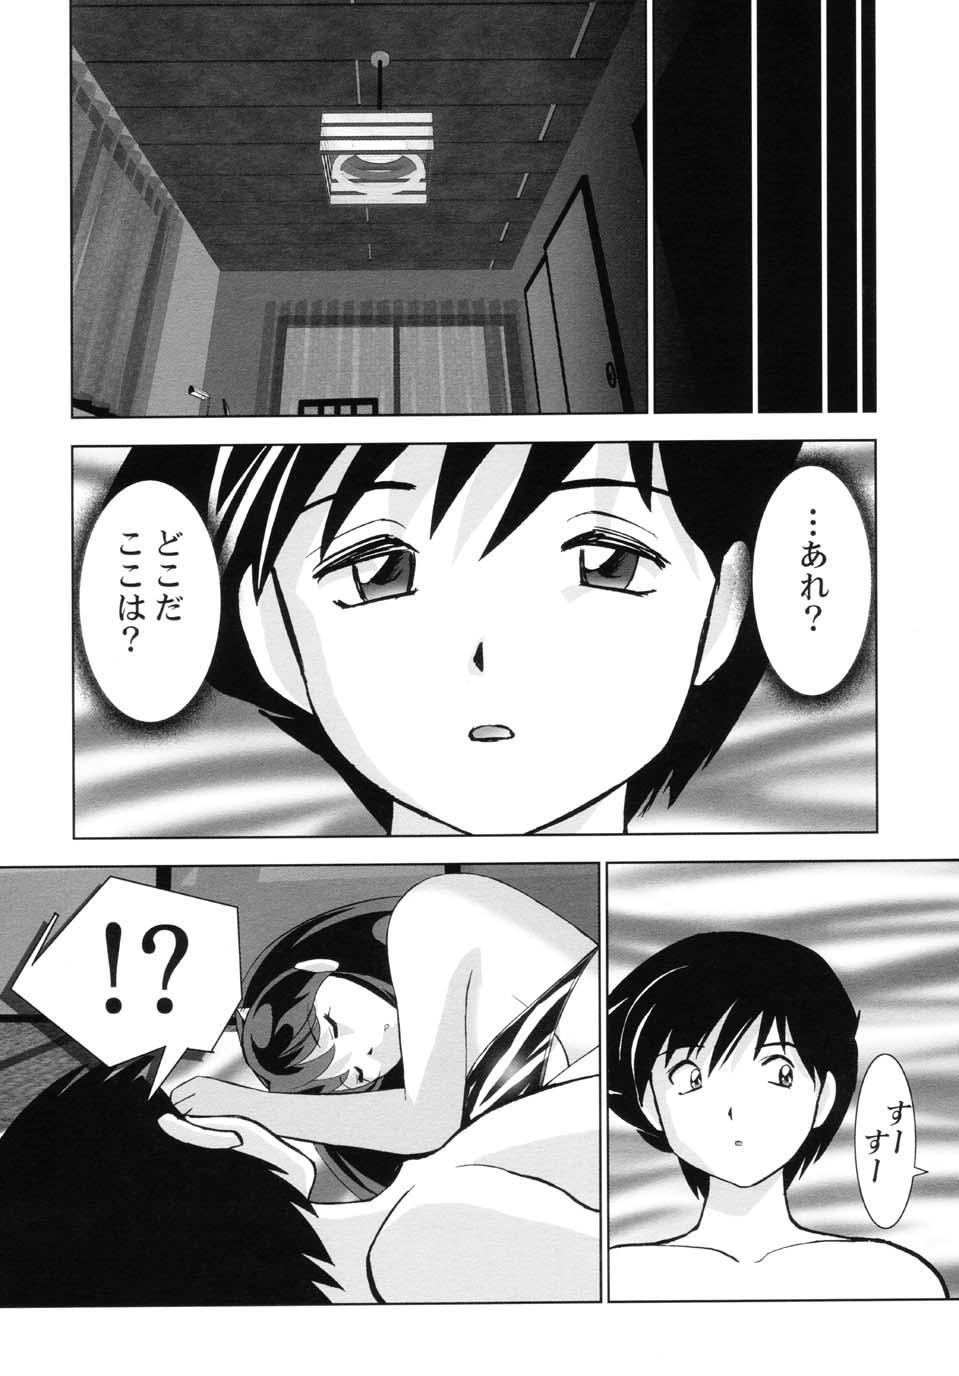 4some Suki Suki Lumchan - Urusei yatsura Strange - Page 4